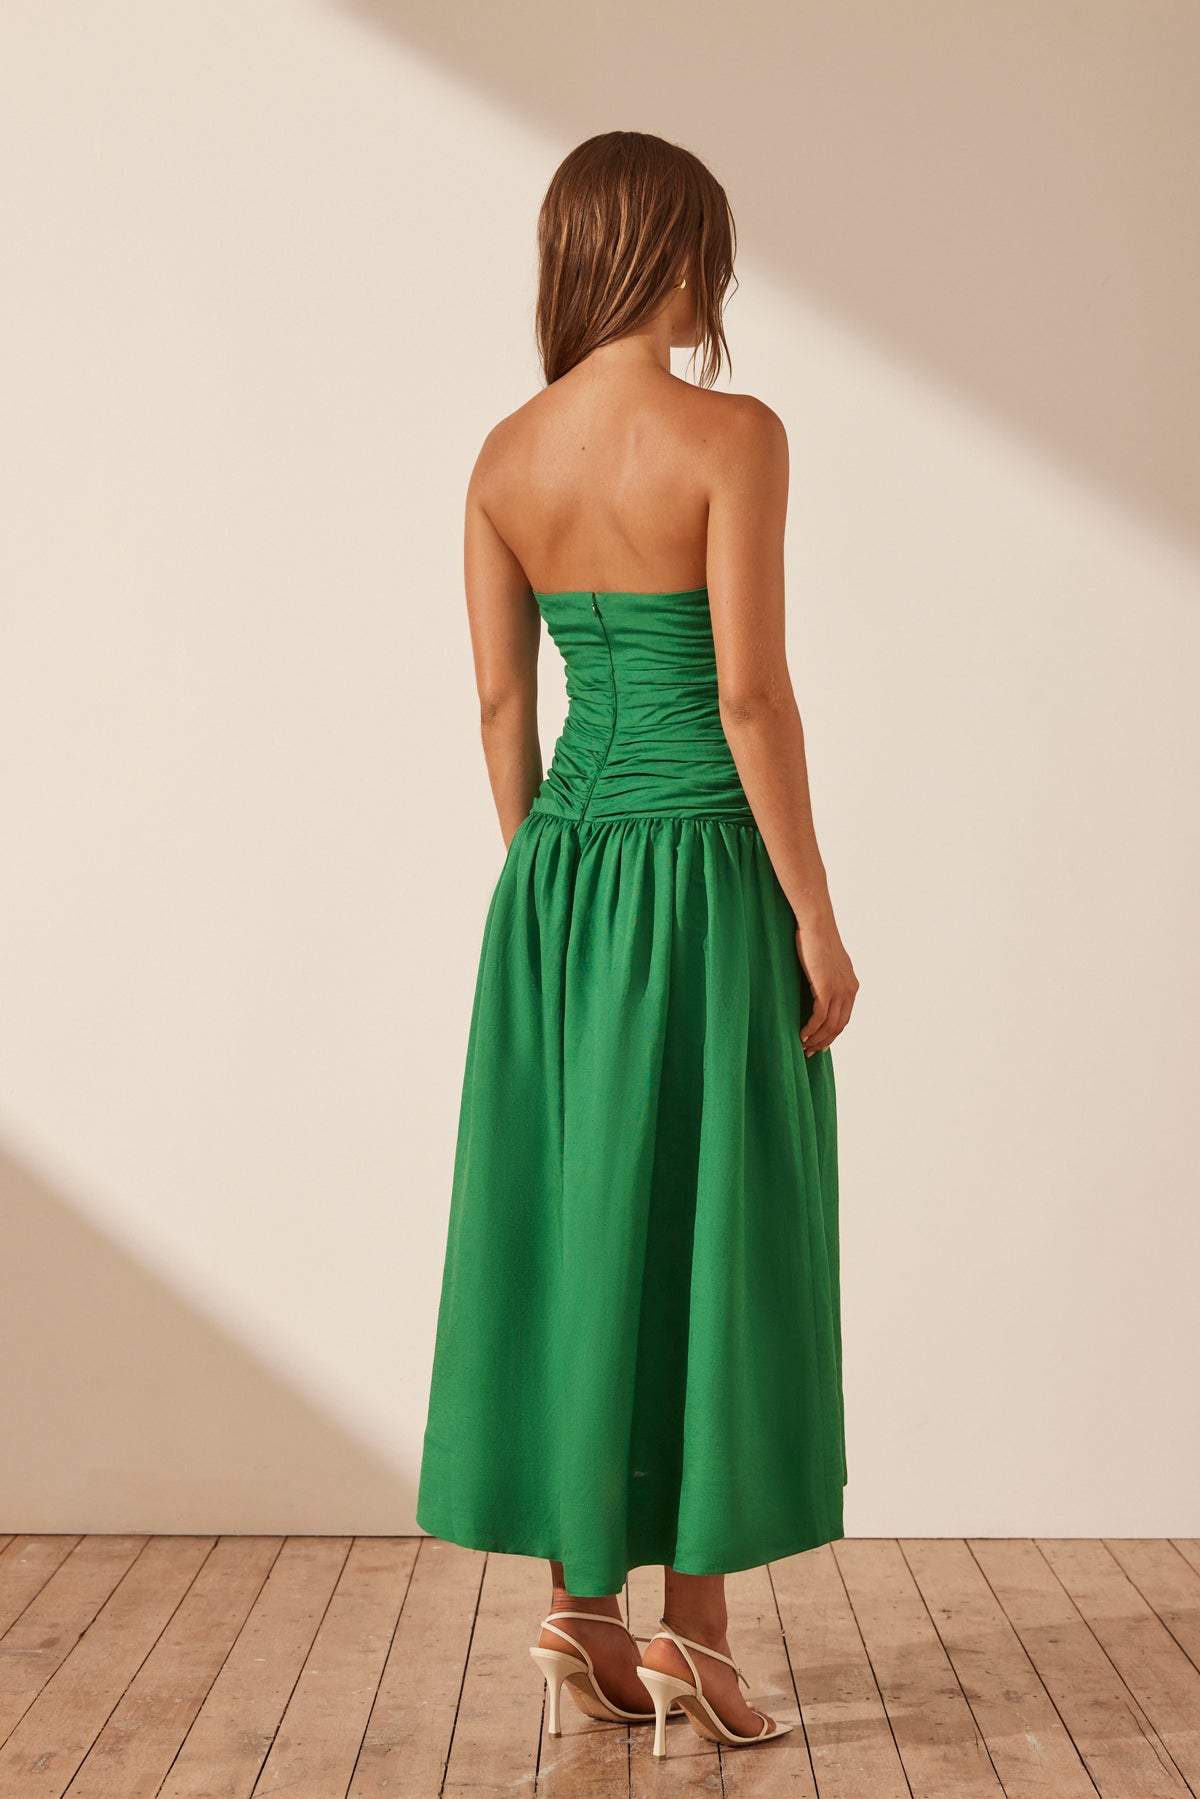 Emerald Green Strapless Dress - Shop on Pinterest